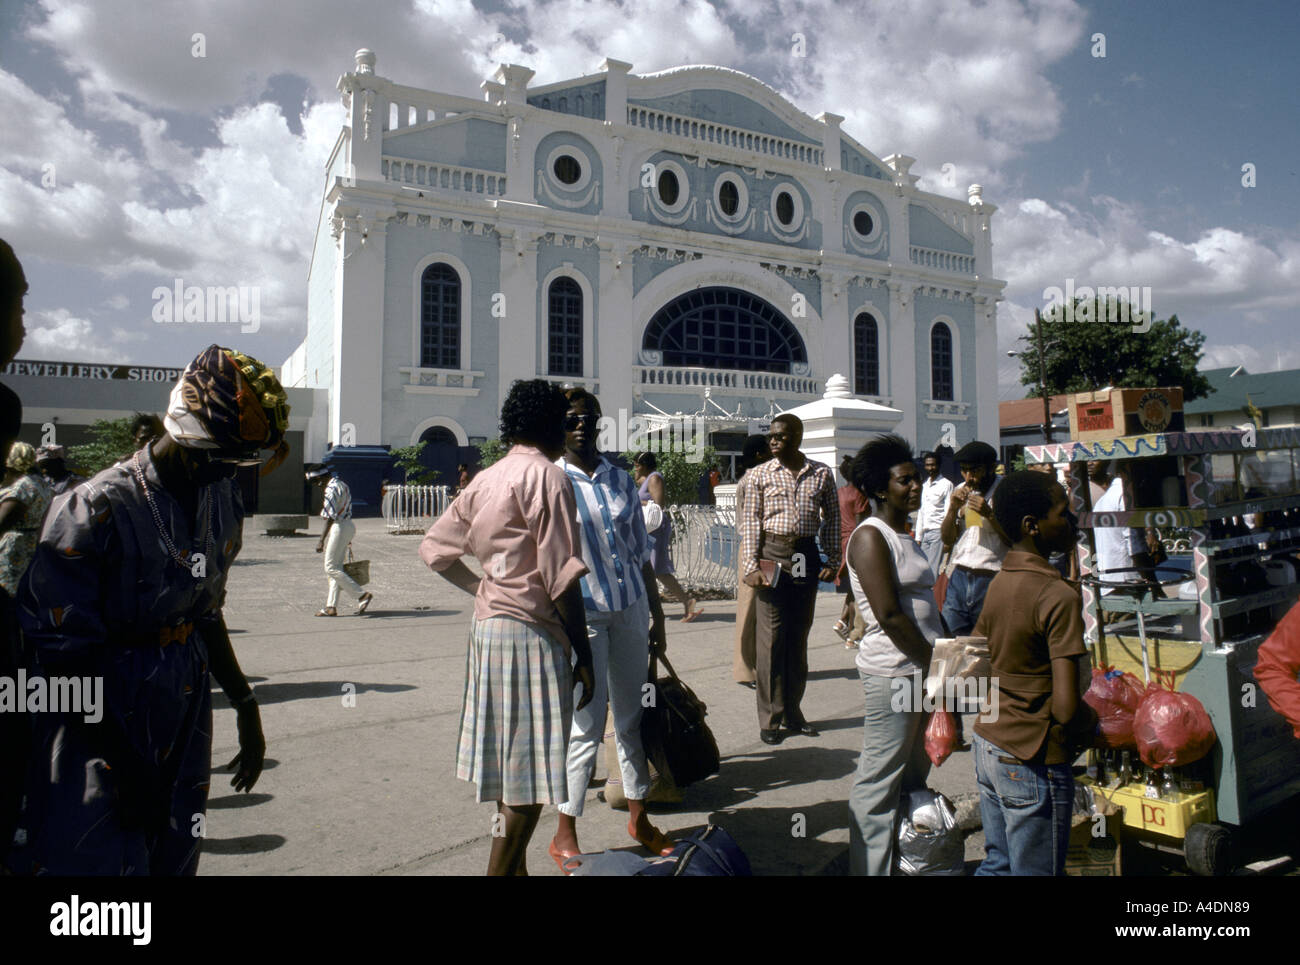 La popolazione locale la raccolta in una piazza al di fuori di un edificio, Kingston, Giamaica Foto Stock